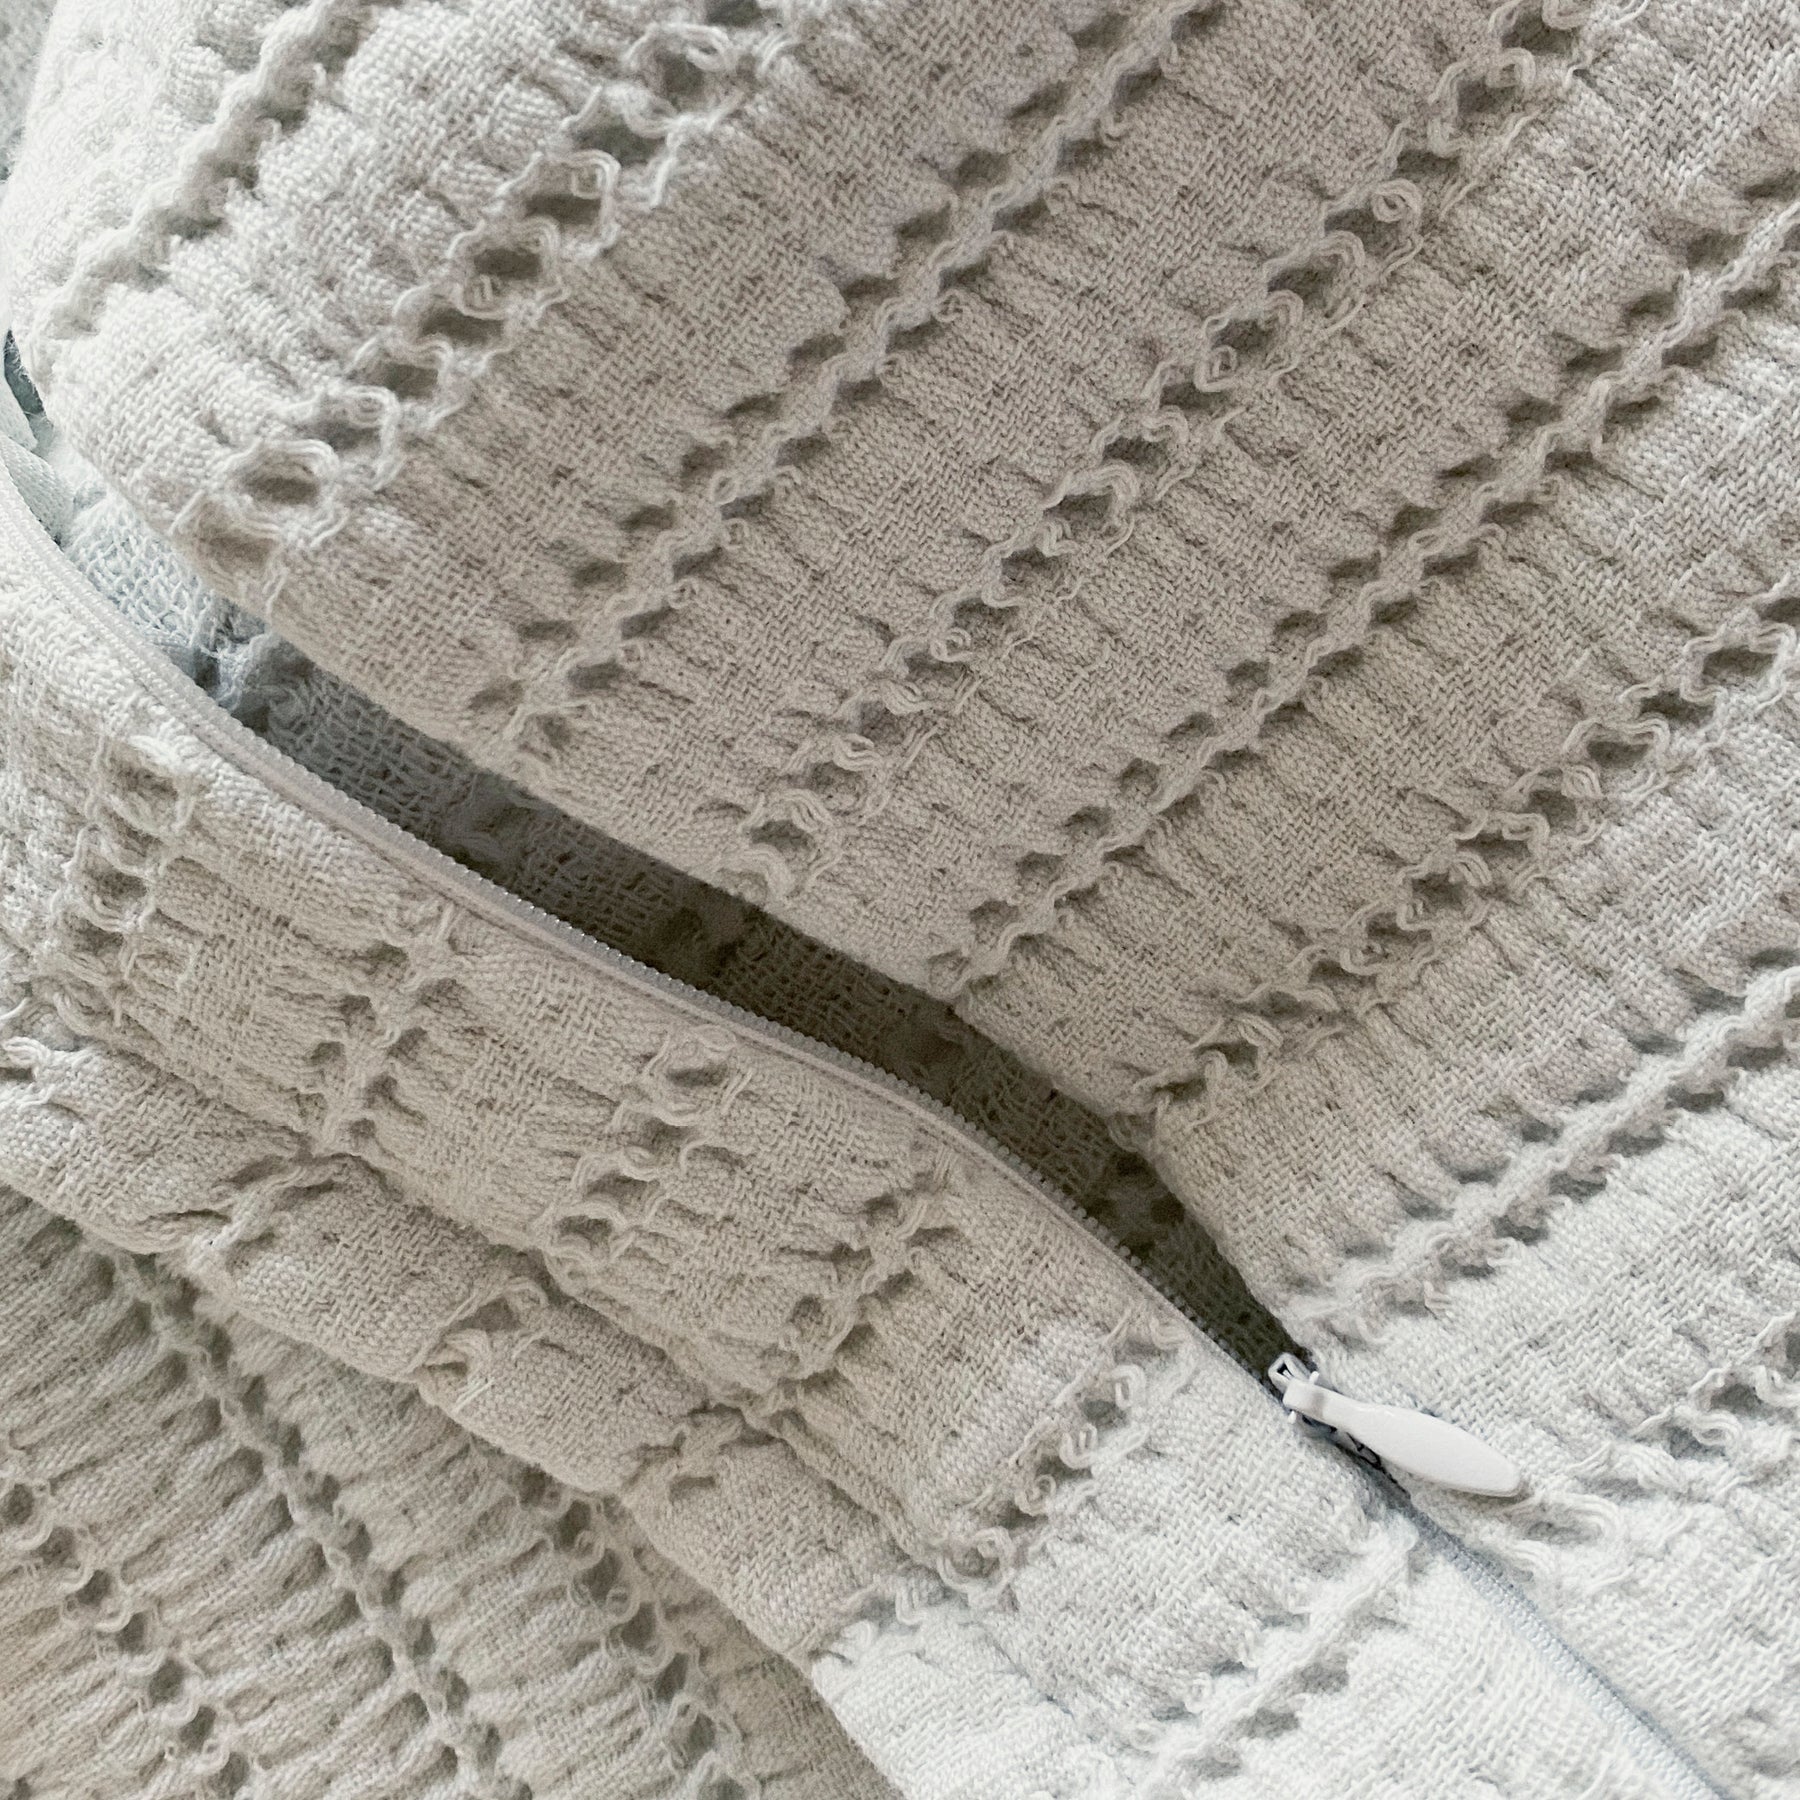 Close-up image of the zipper on the Ecru Ridgeback Lumbar Pillow Cover